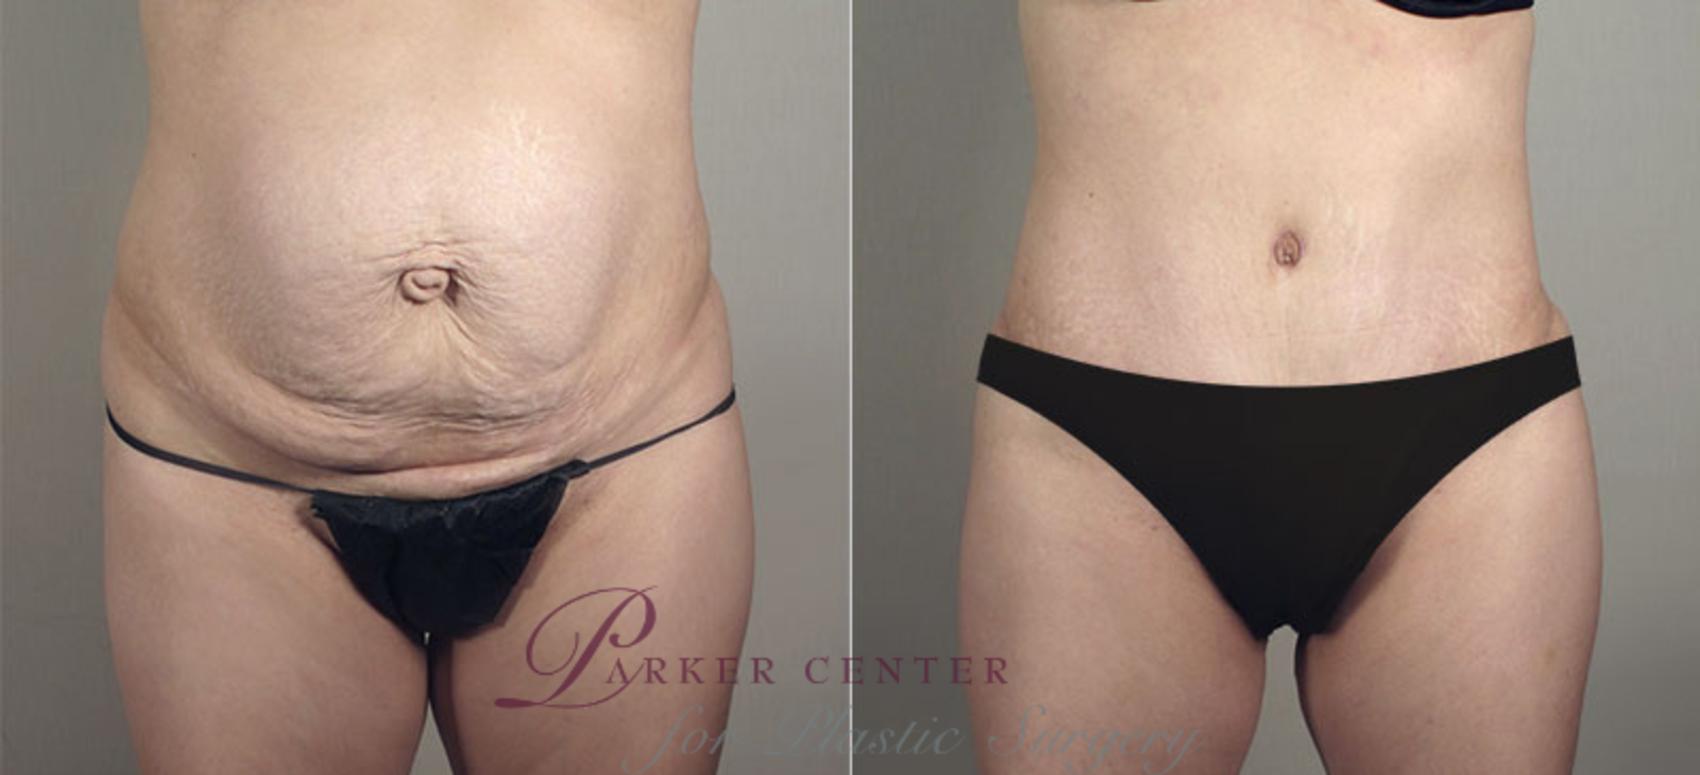 Liposuction Case 721 Before & After View #1 | Paramus, NJ | Parker Center for Plastic Surgery